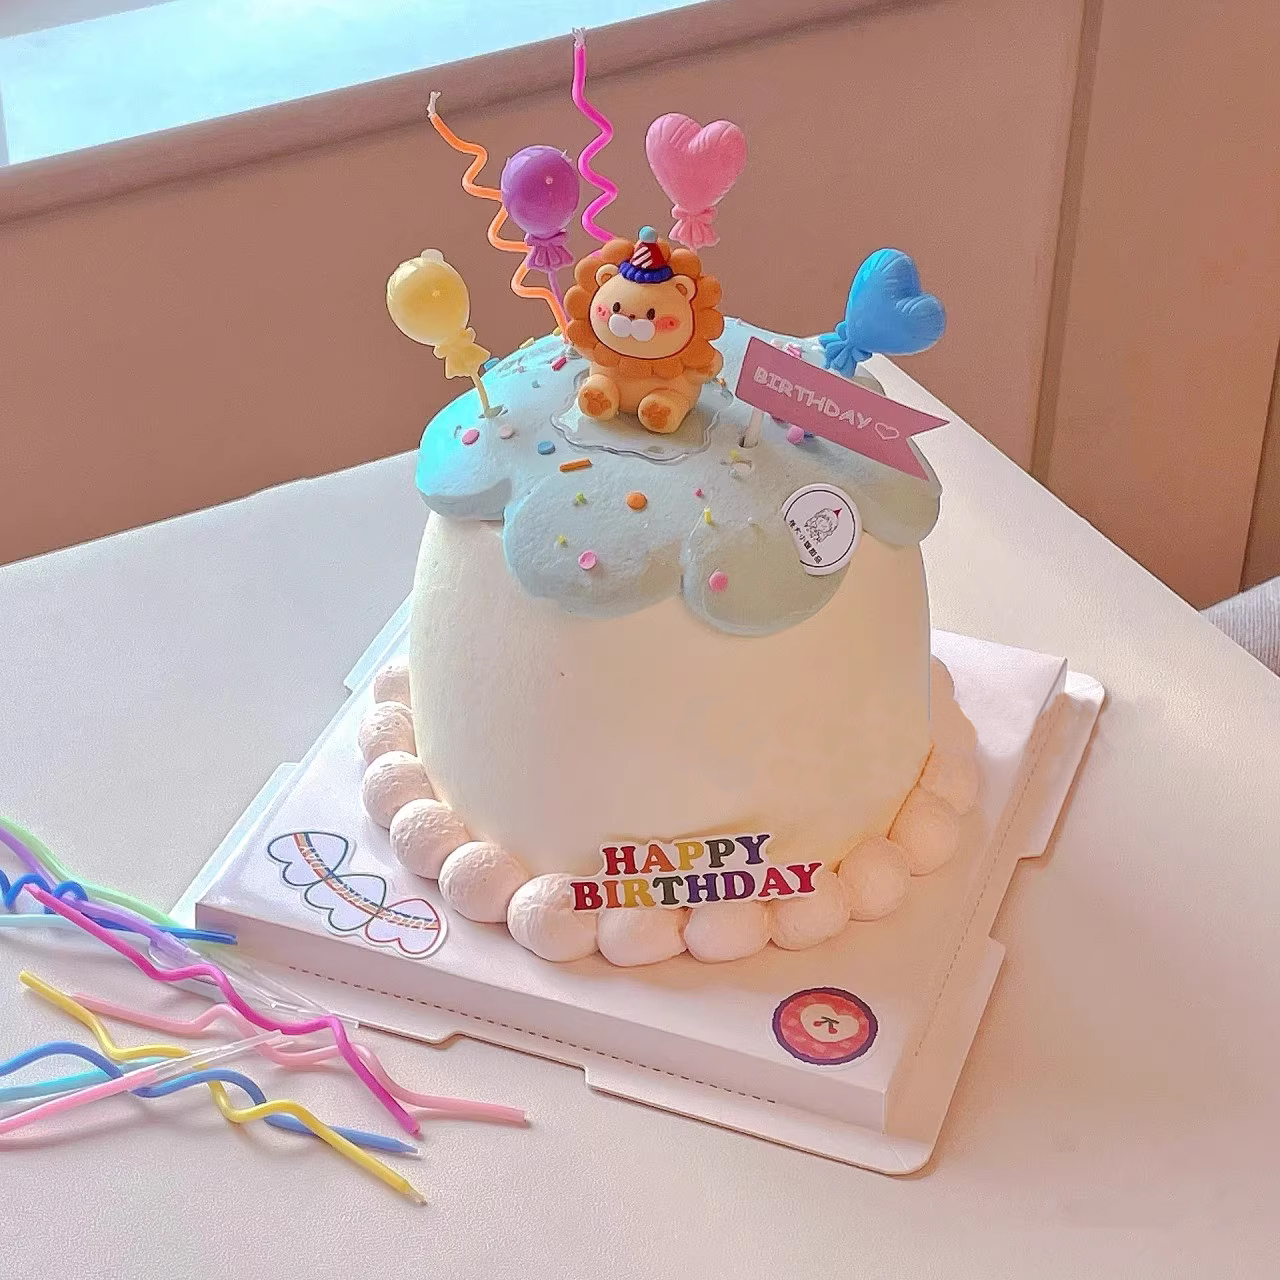 可爱派对帽小狮子儿童生日蛋糕装饰摆件狮子座马卡龙小气球插件